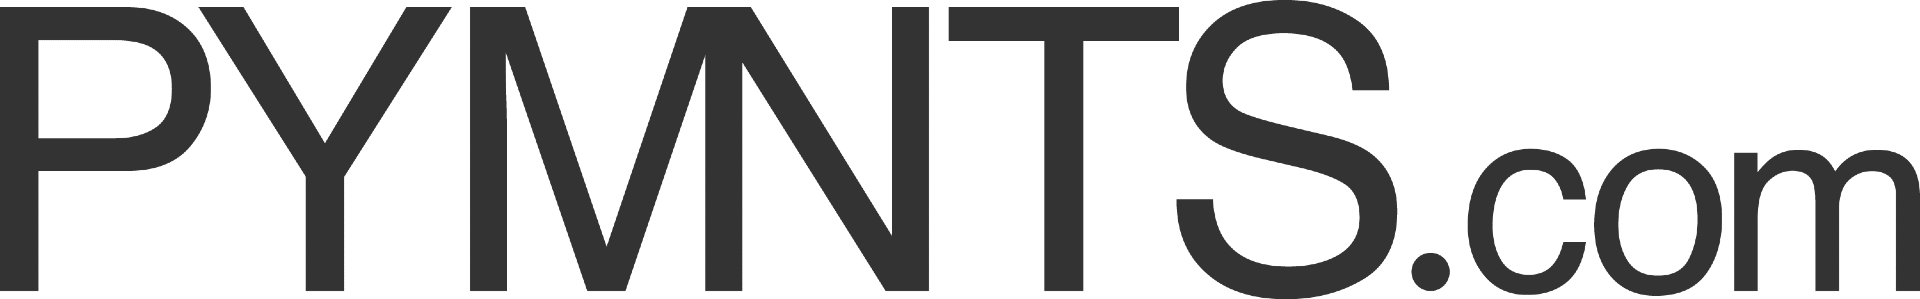 PYMNTS.com logo